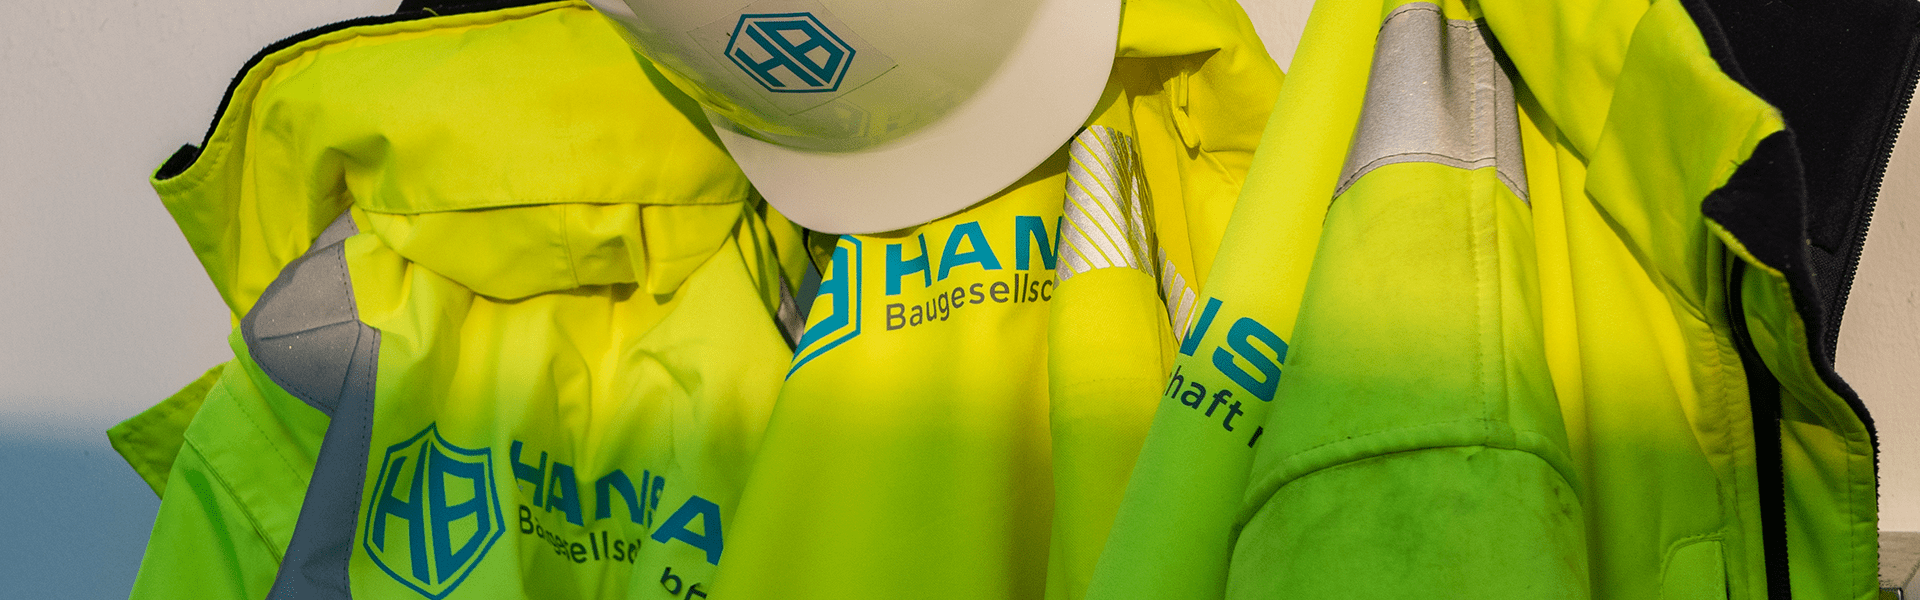 HB Hansa Baugesellschaft Jobs